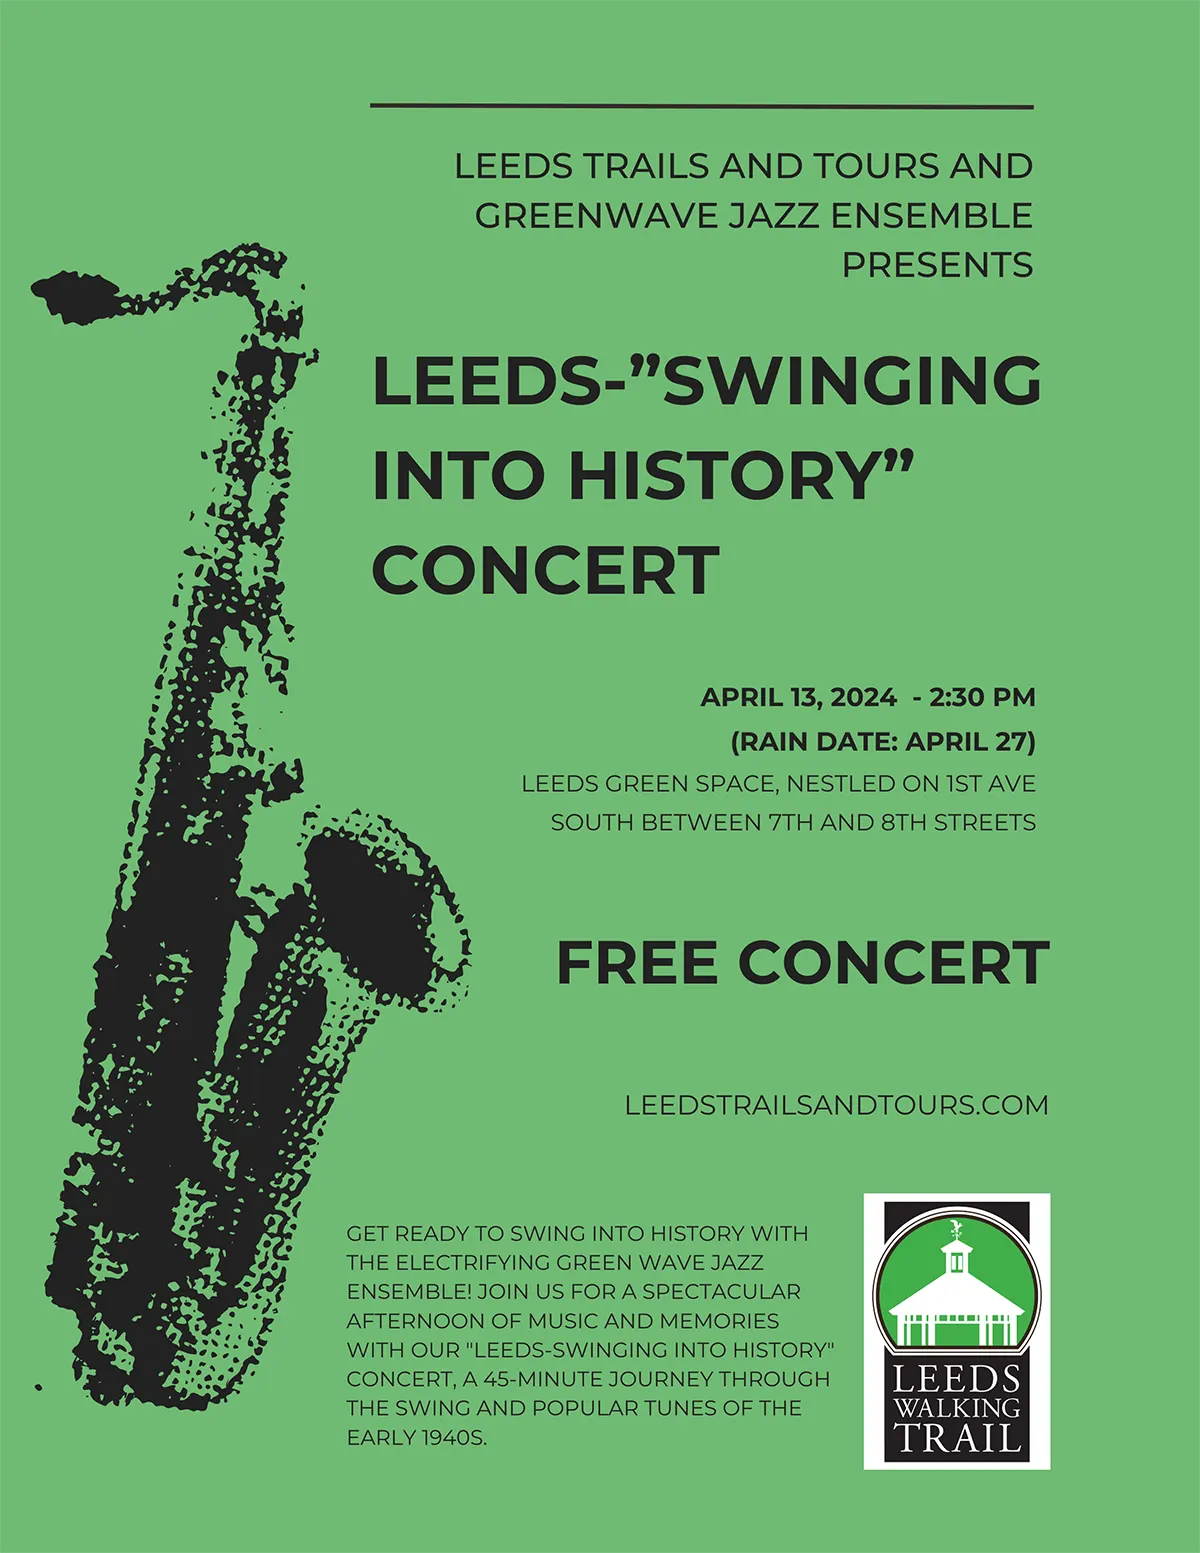 greenwave jazz 1940s concert_8.5x11